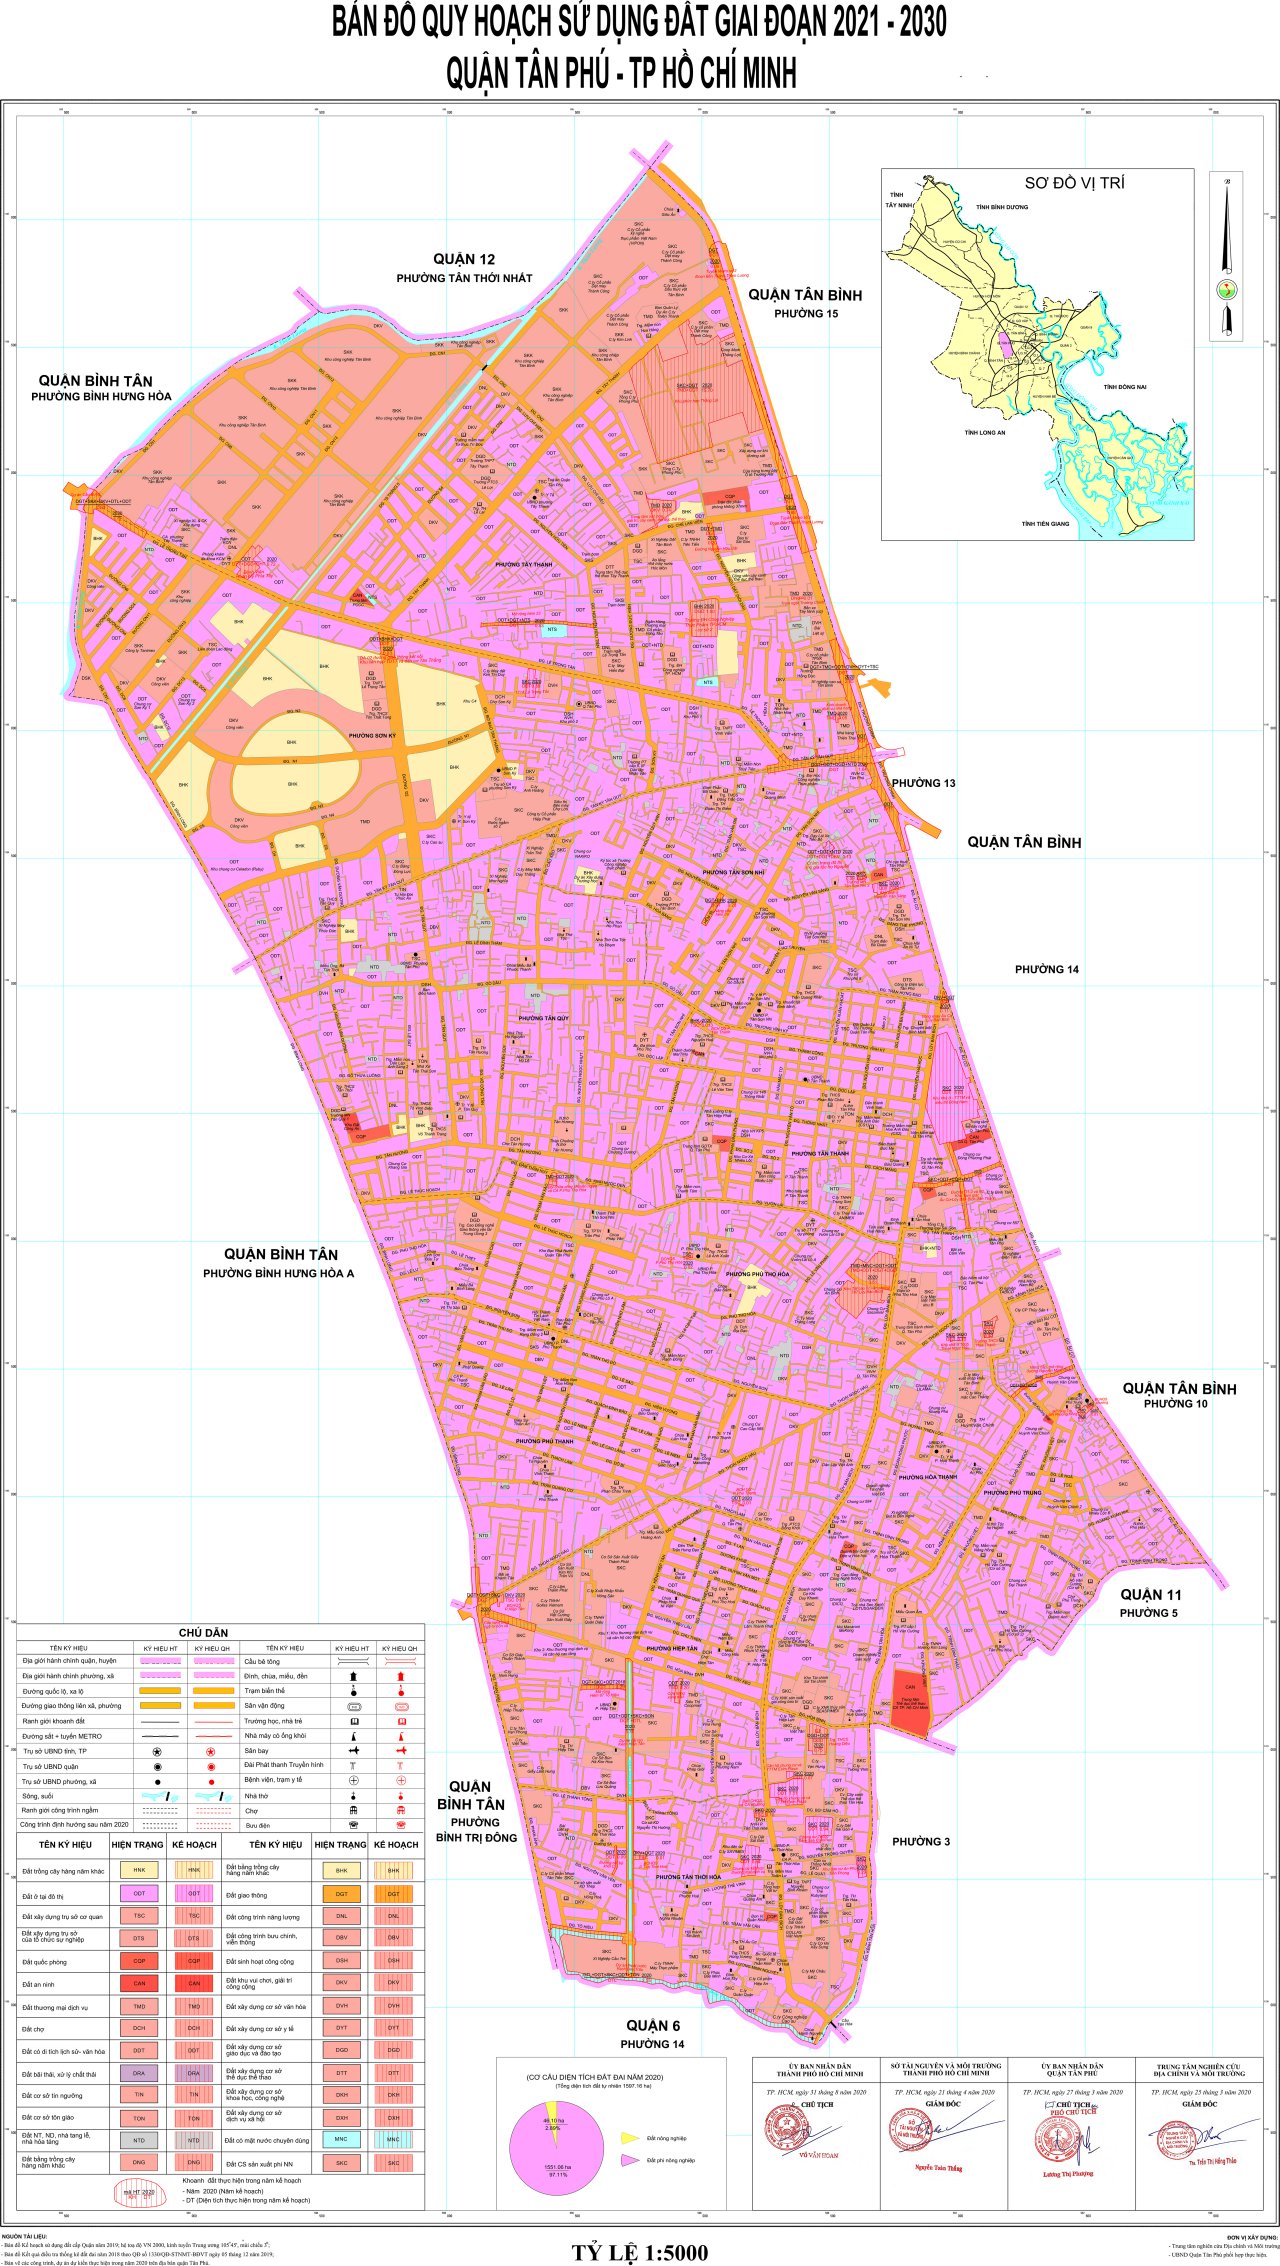 Bản đồ quy hoạch sử dụng đất Quận Tân Phú giai đoạn từ năm 2021 – 2030